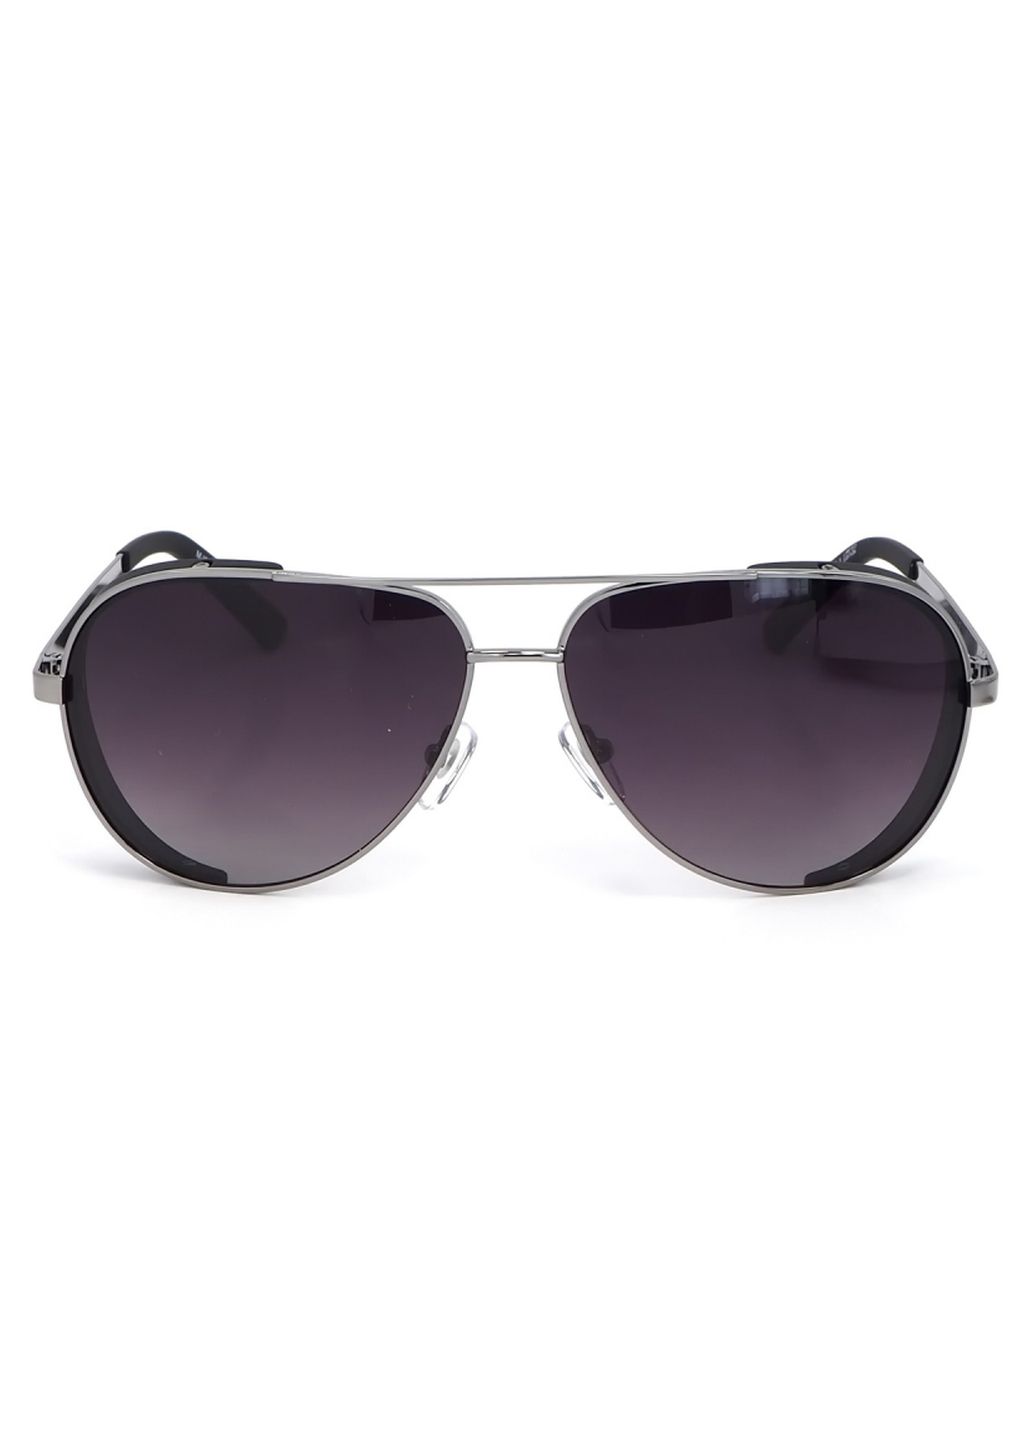 Купить Мужские солнцезащитные очки Marc John с поляризацией MJ0782 190034 - Серый в интернет-магазине